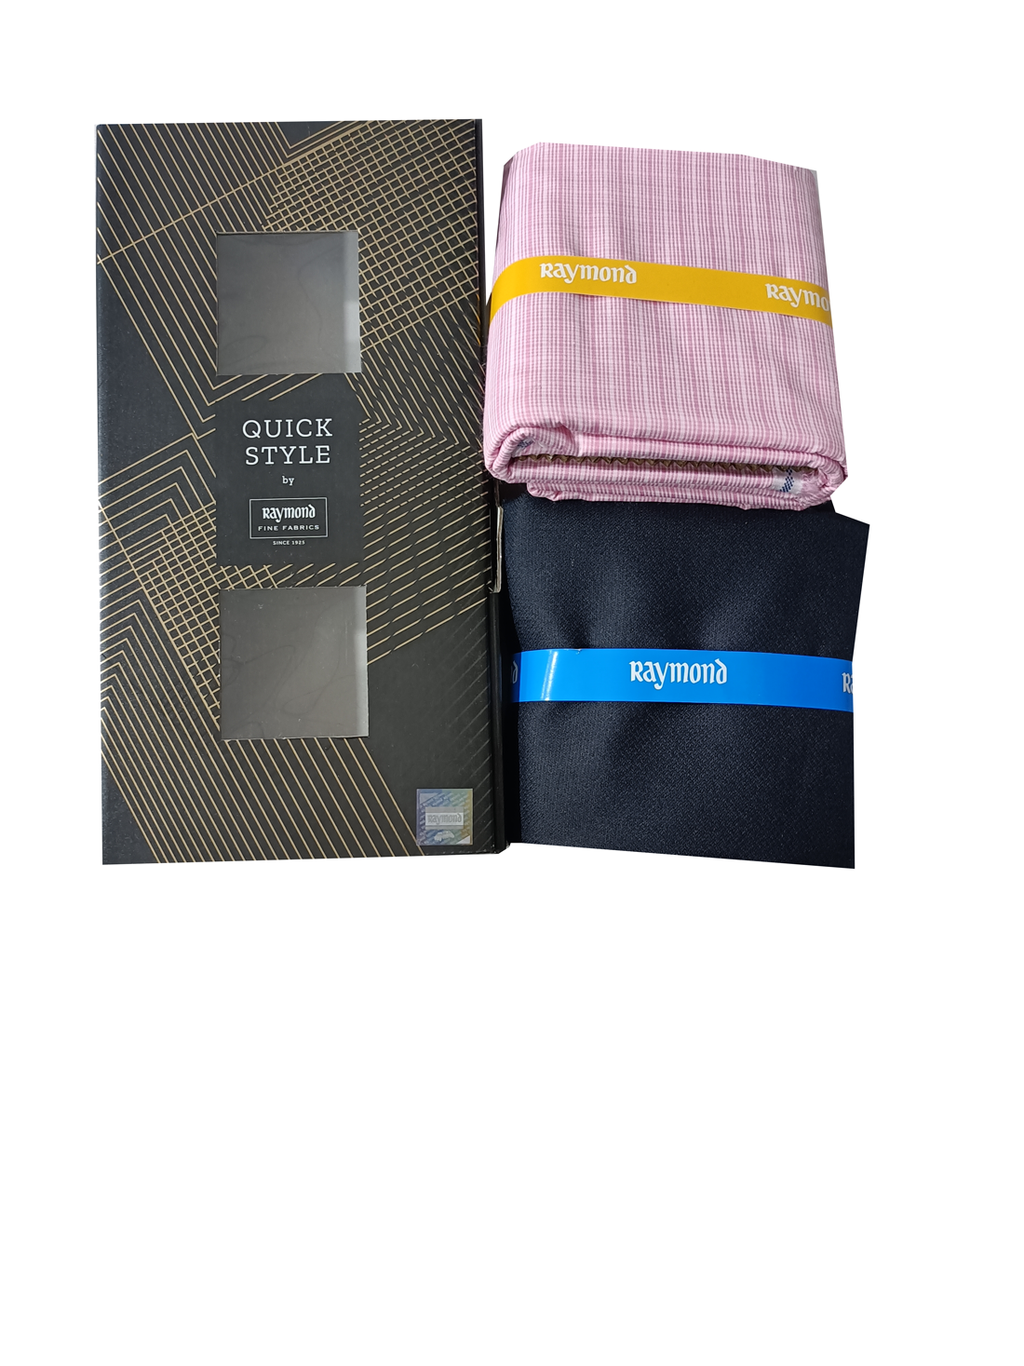 Polyester Viscose Raymond Pant Shirt Gift Pack, Handwash, 150-200 at Rs  850/box in New Delhi